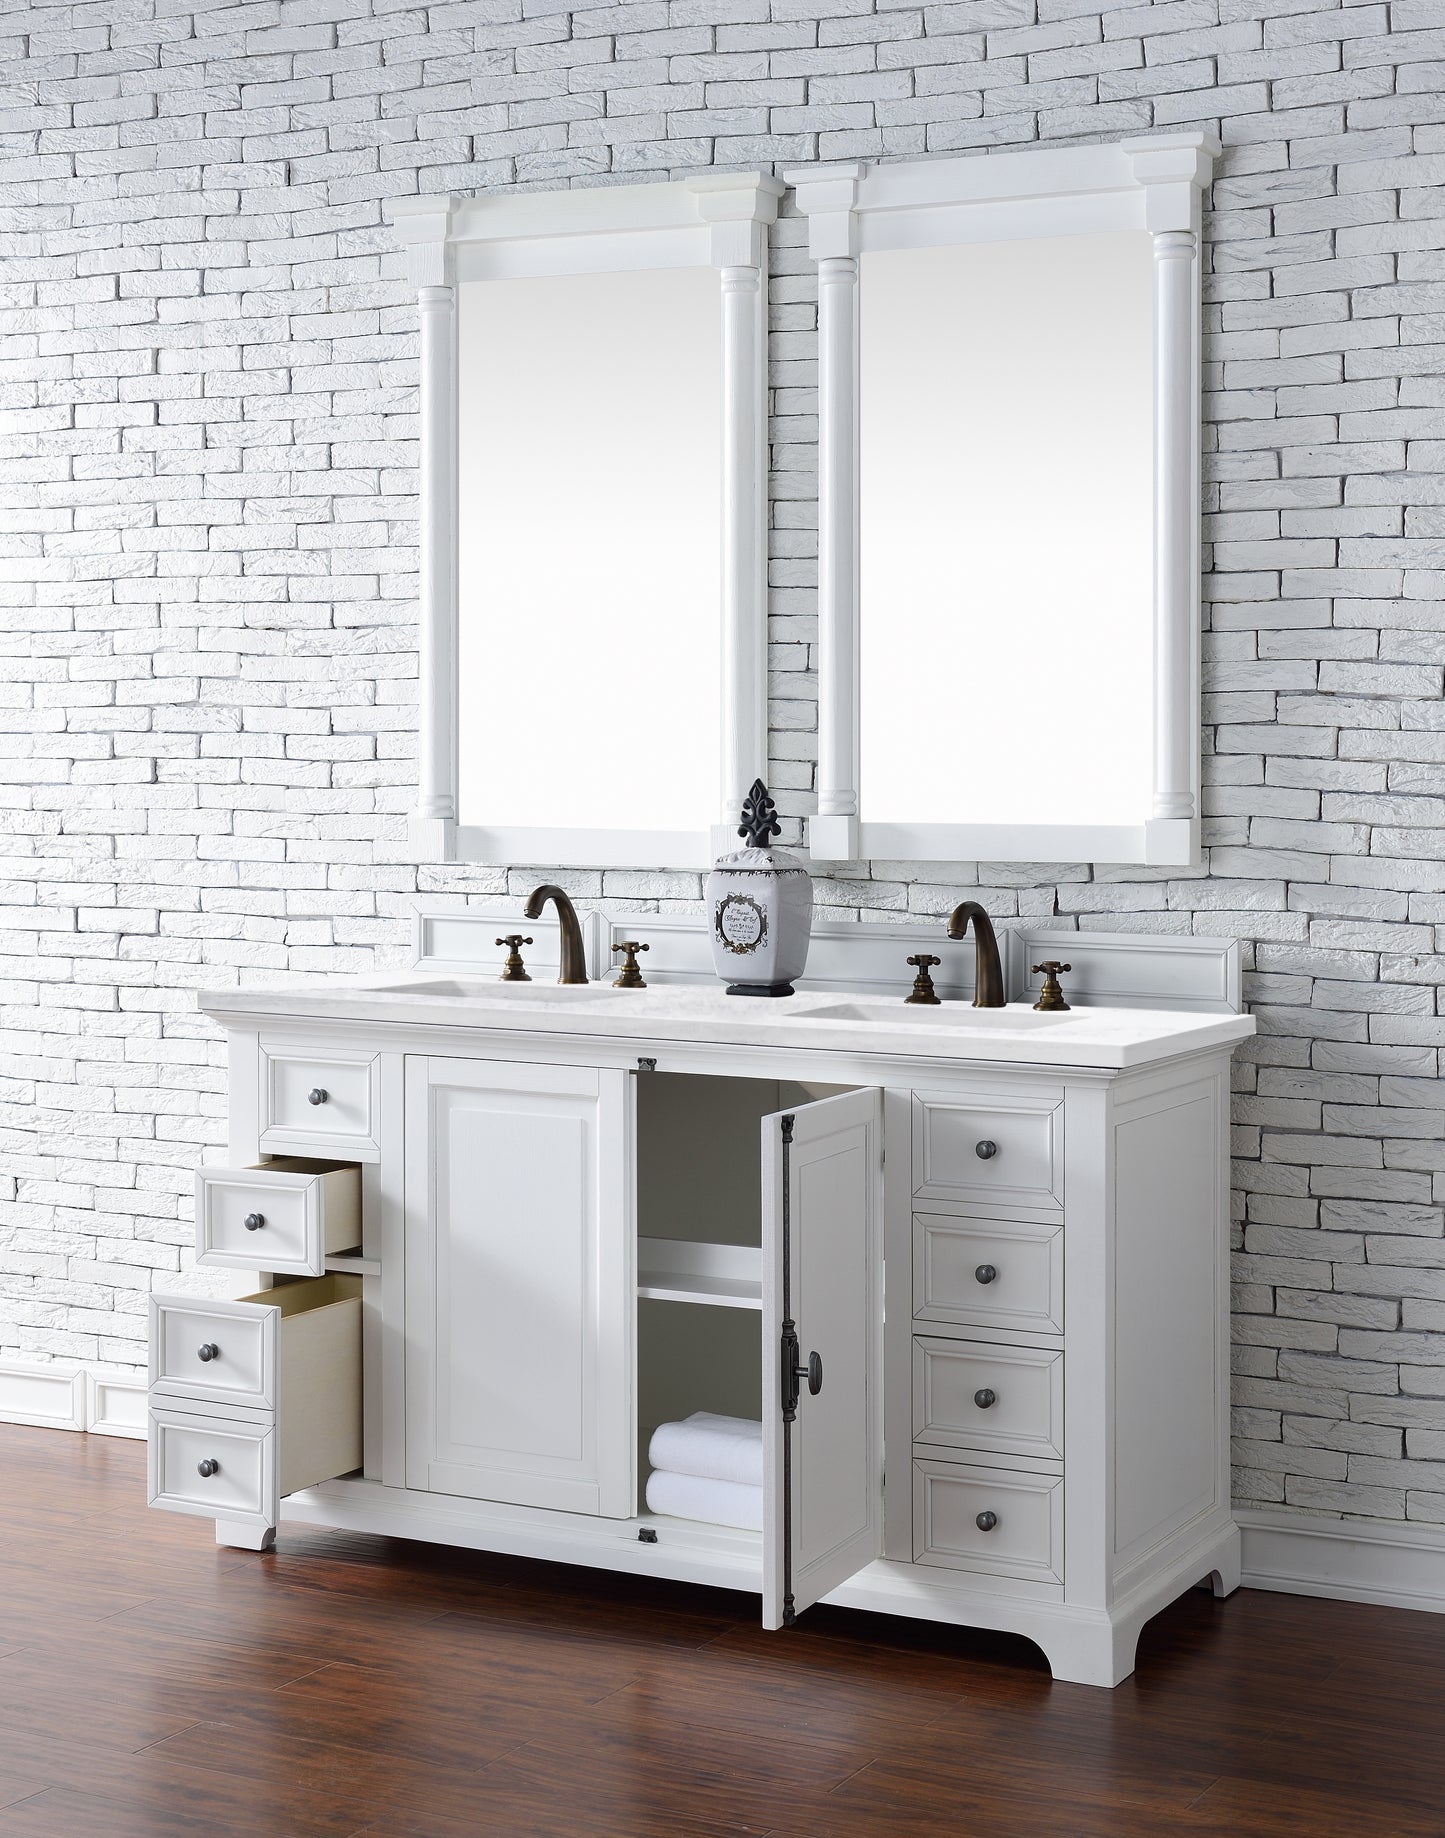 James Martin Providence 60" Double Vanity with 3 CM Countertop - Luxe Bathroom Vanities